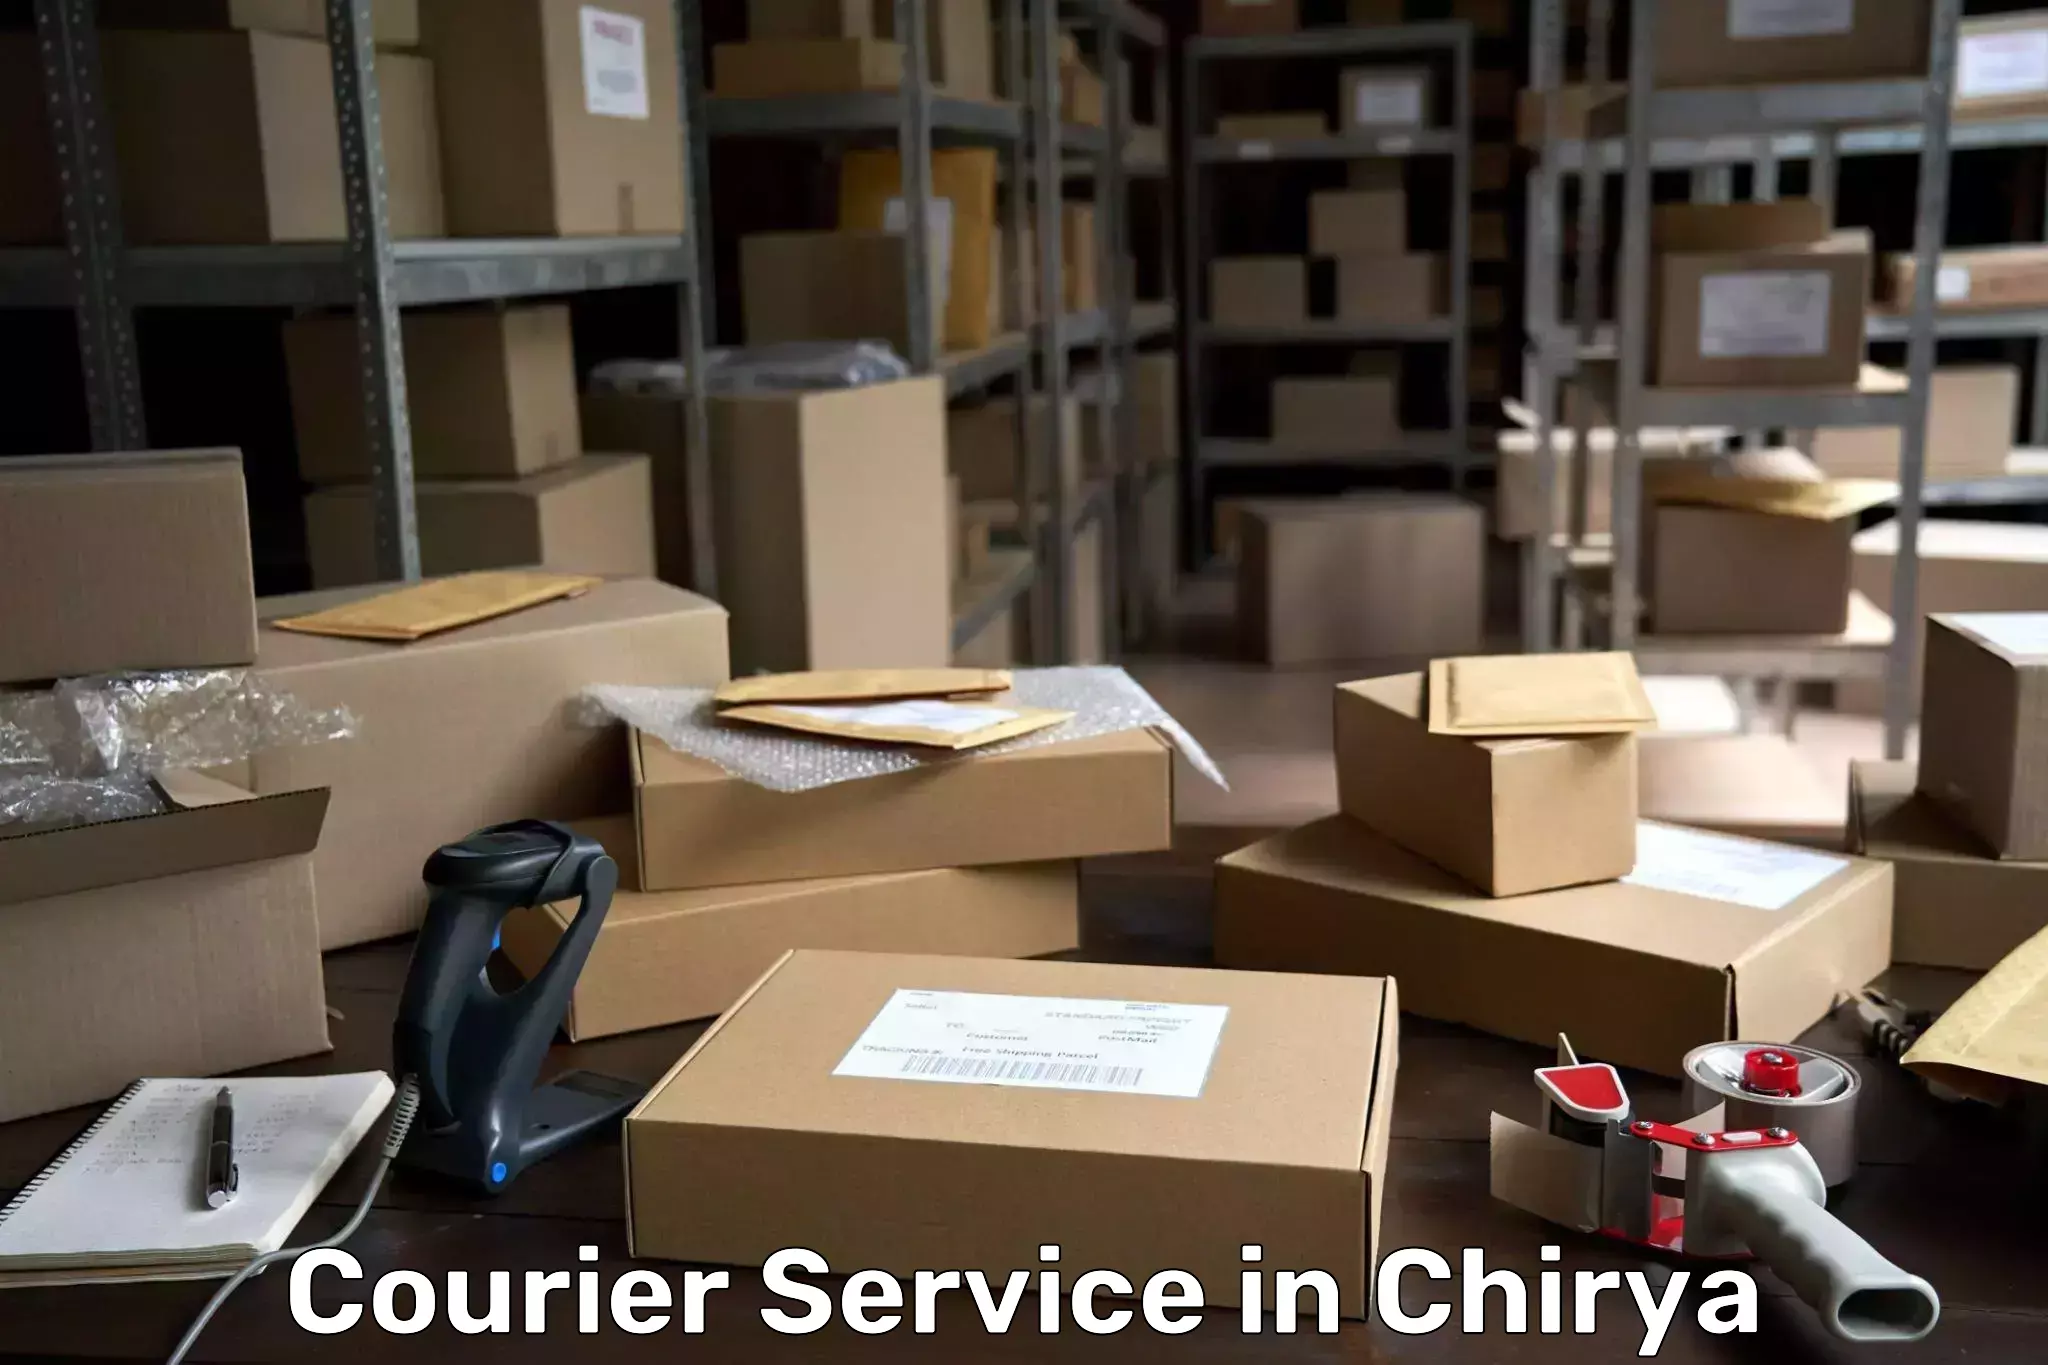 Doorstep delivery service in Chirya